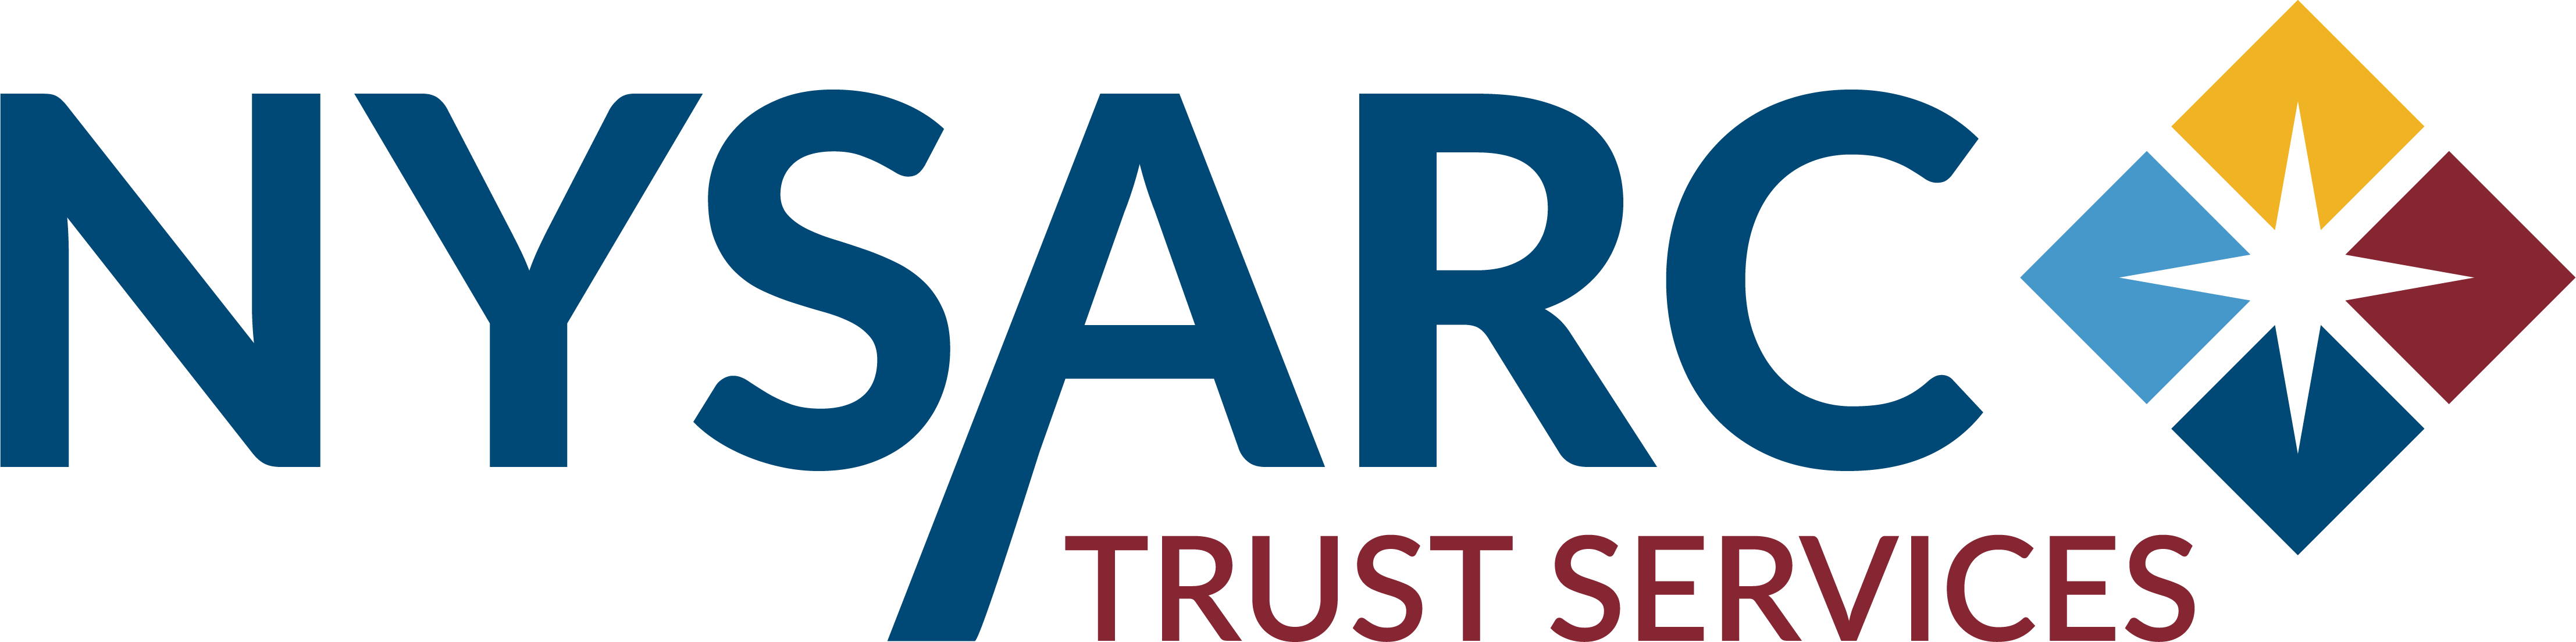 NYSARC-Logo-WEB-DIGITAL.png